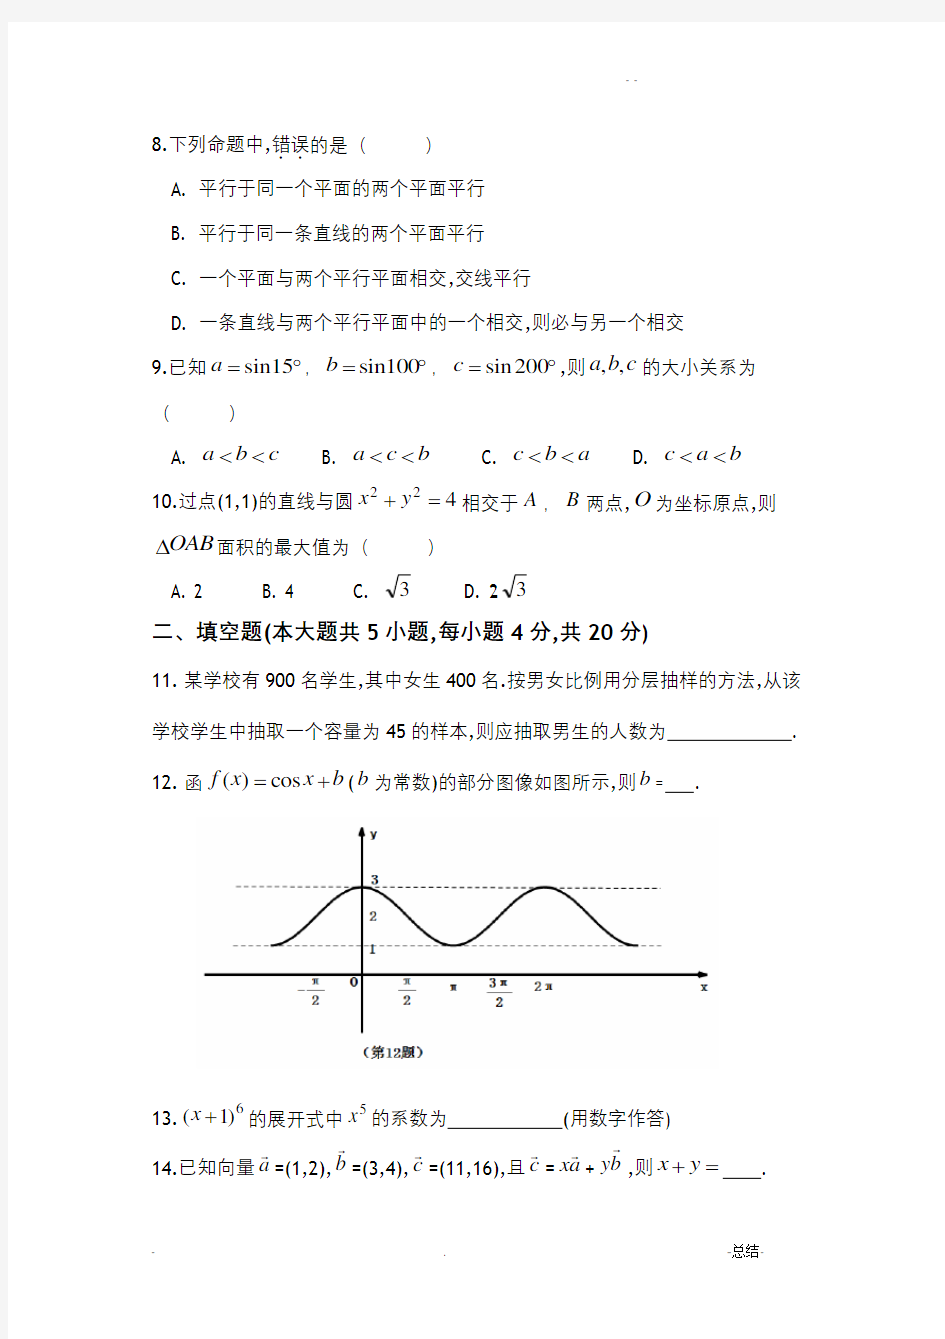 湖南省2018年高考对口招生考试数学真题和参考题答案